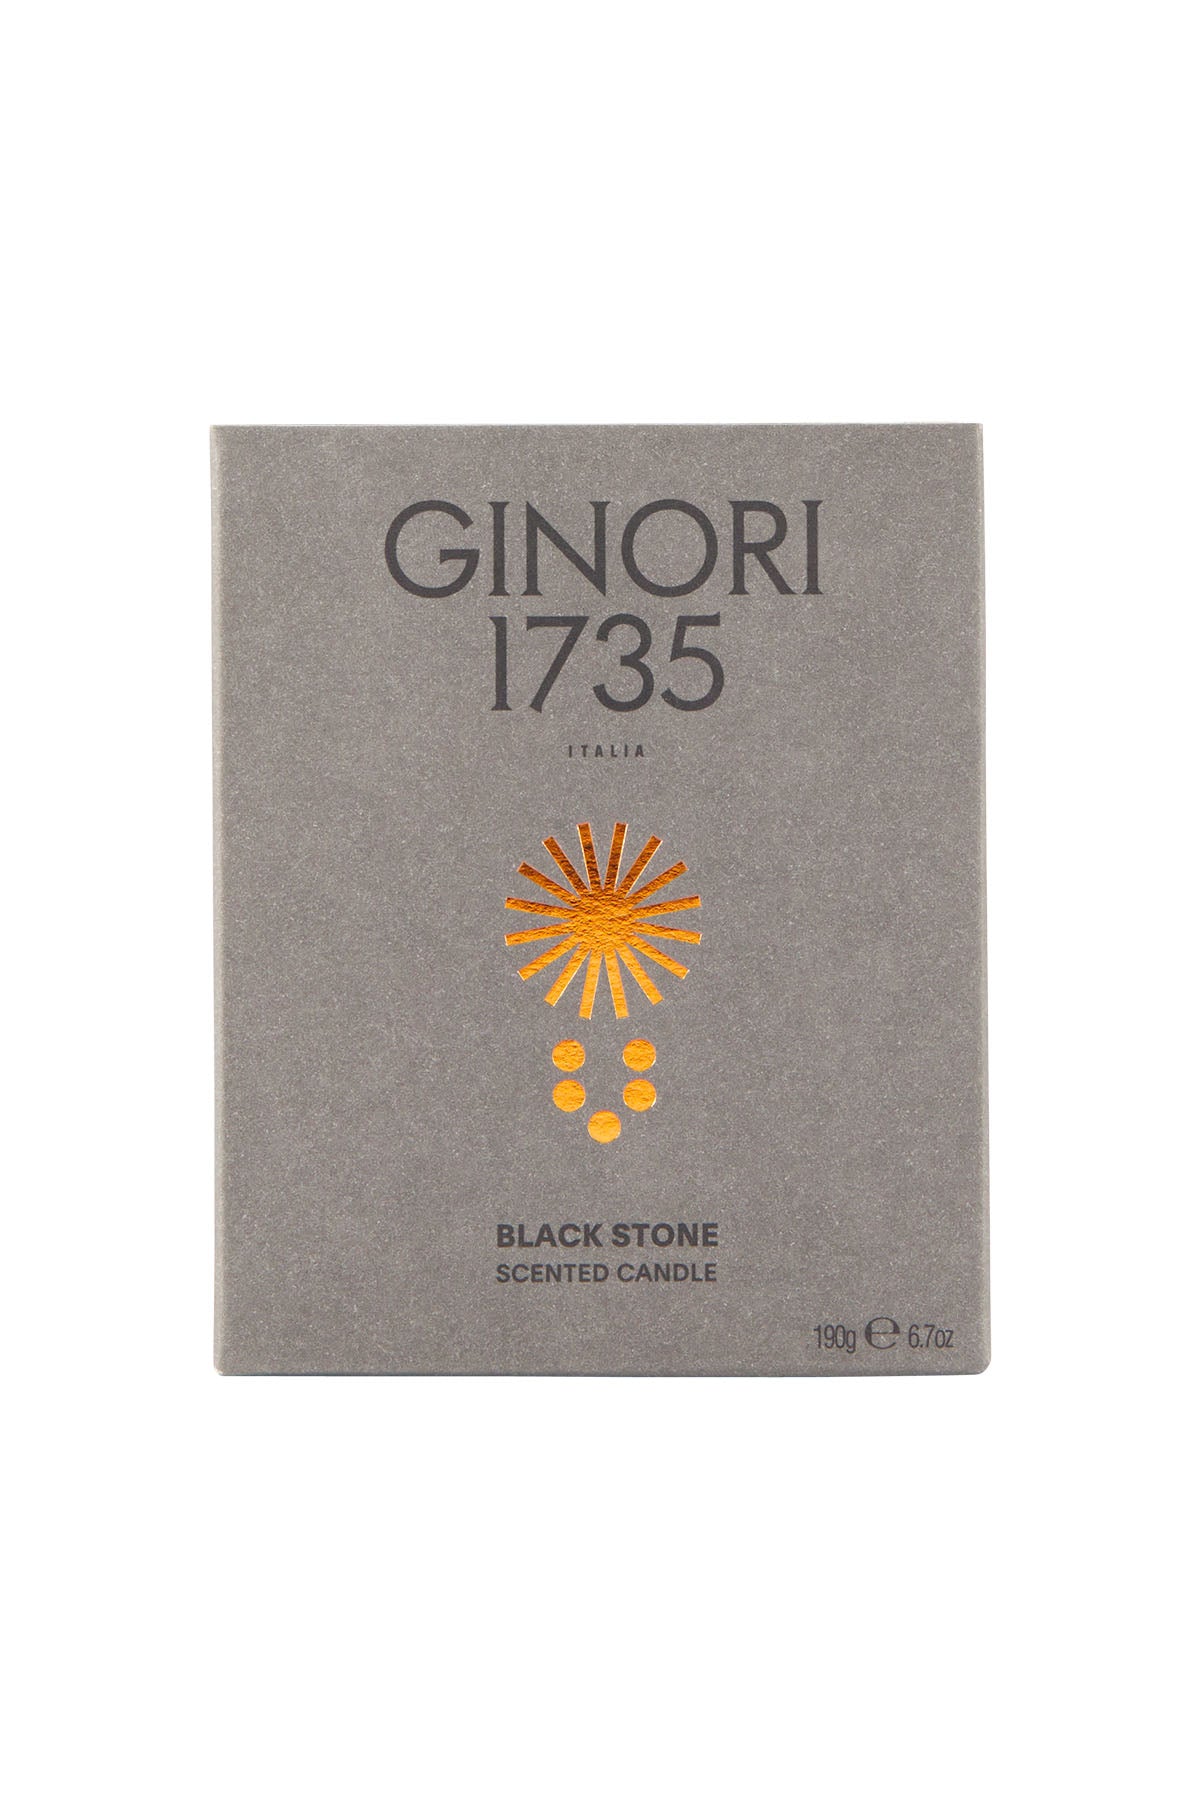 Ginori 1735 black stone scented candle refill for il seguace 190 gr-0